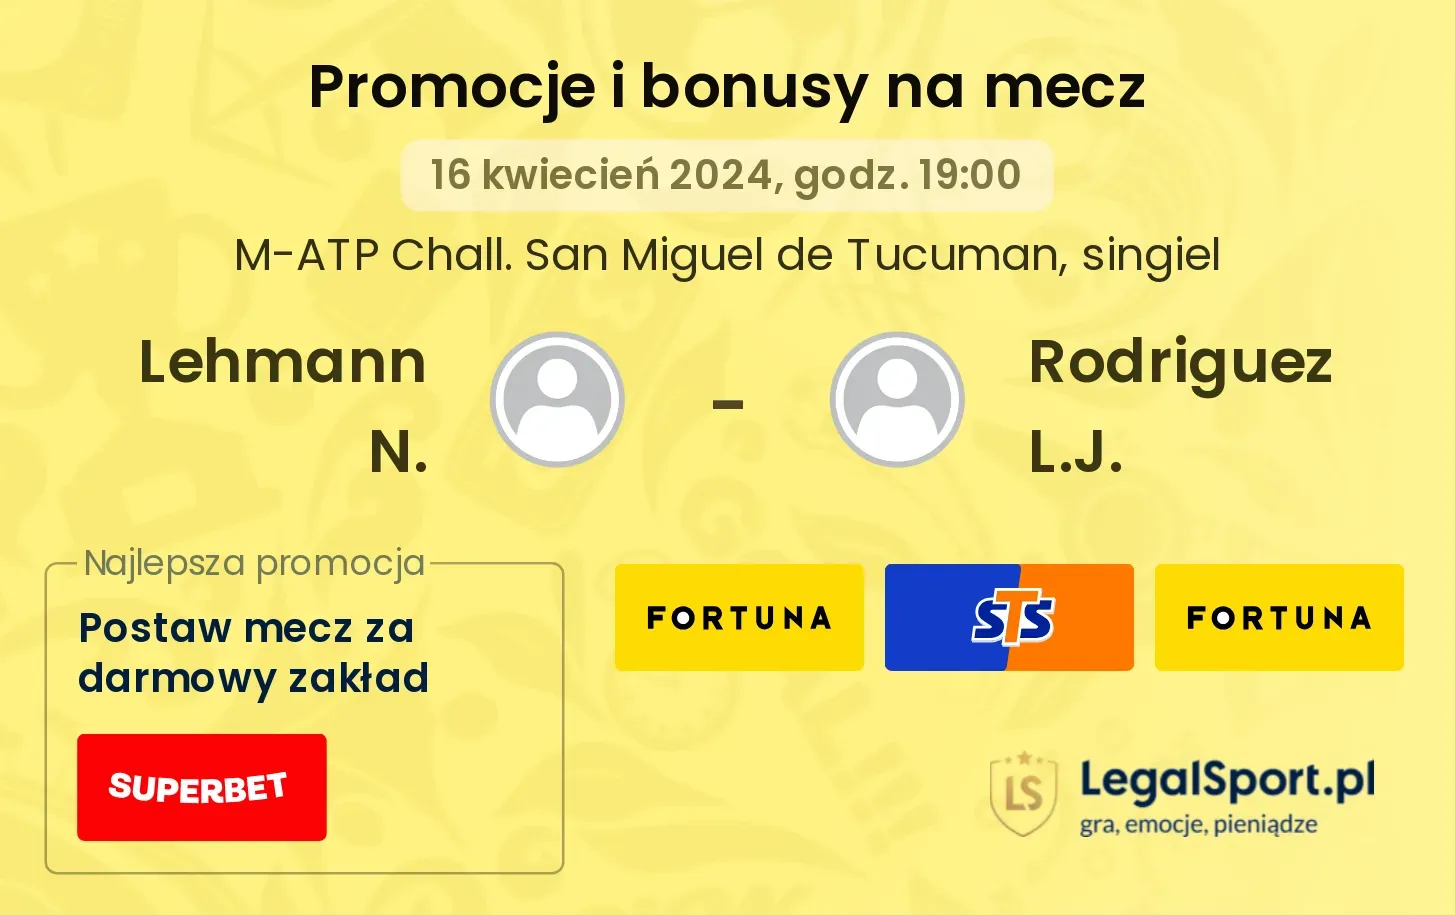 Lehmann N. - Rodriguez L.J. promocje bonusy na mecz